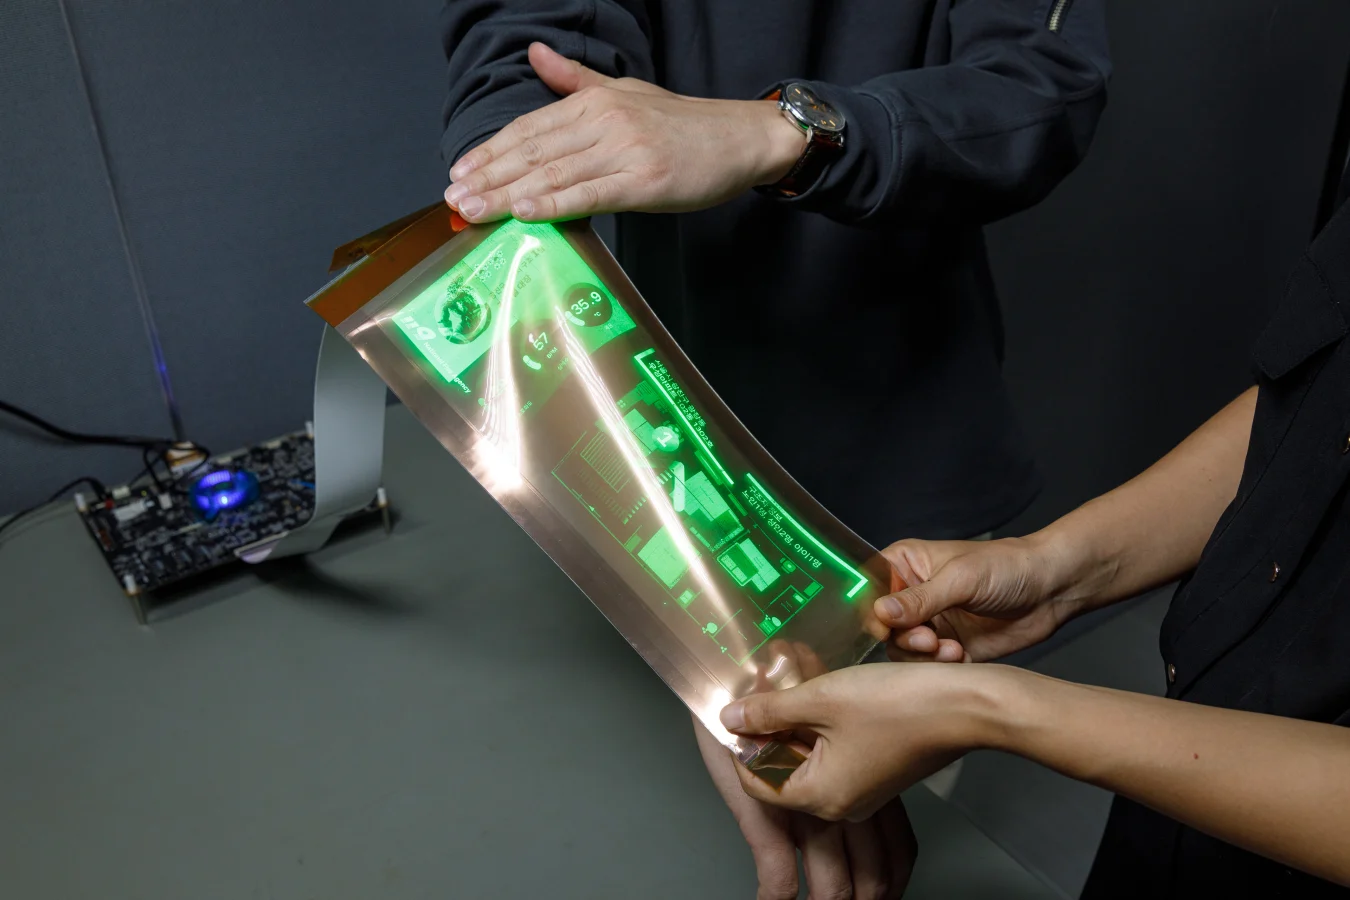 LG Disply ha desarrollado una pantalla elástica de 12 pulgadas que se puede extender en tamaño a 14 pulgadas, anunció la compañía.